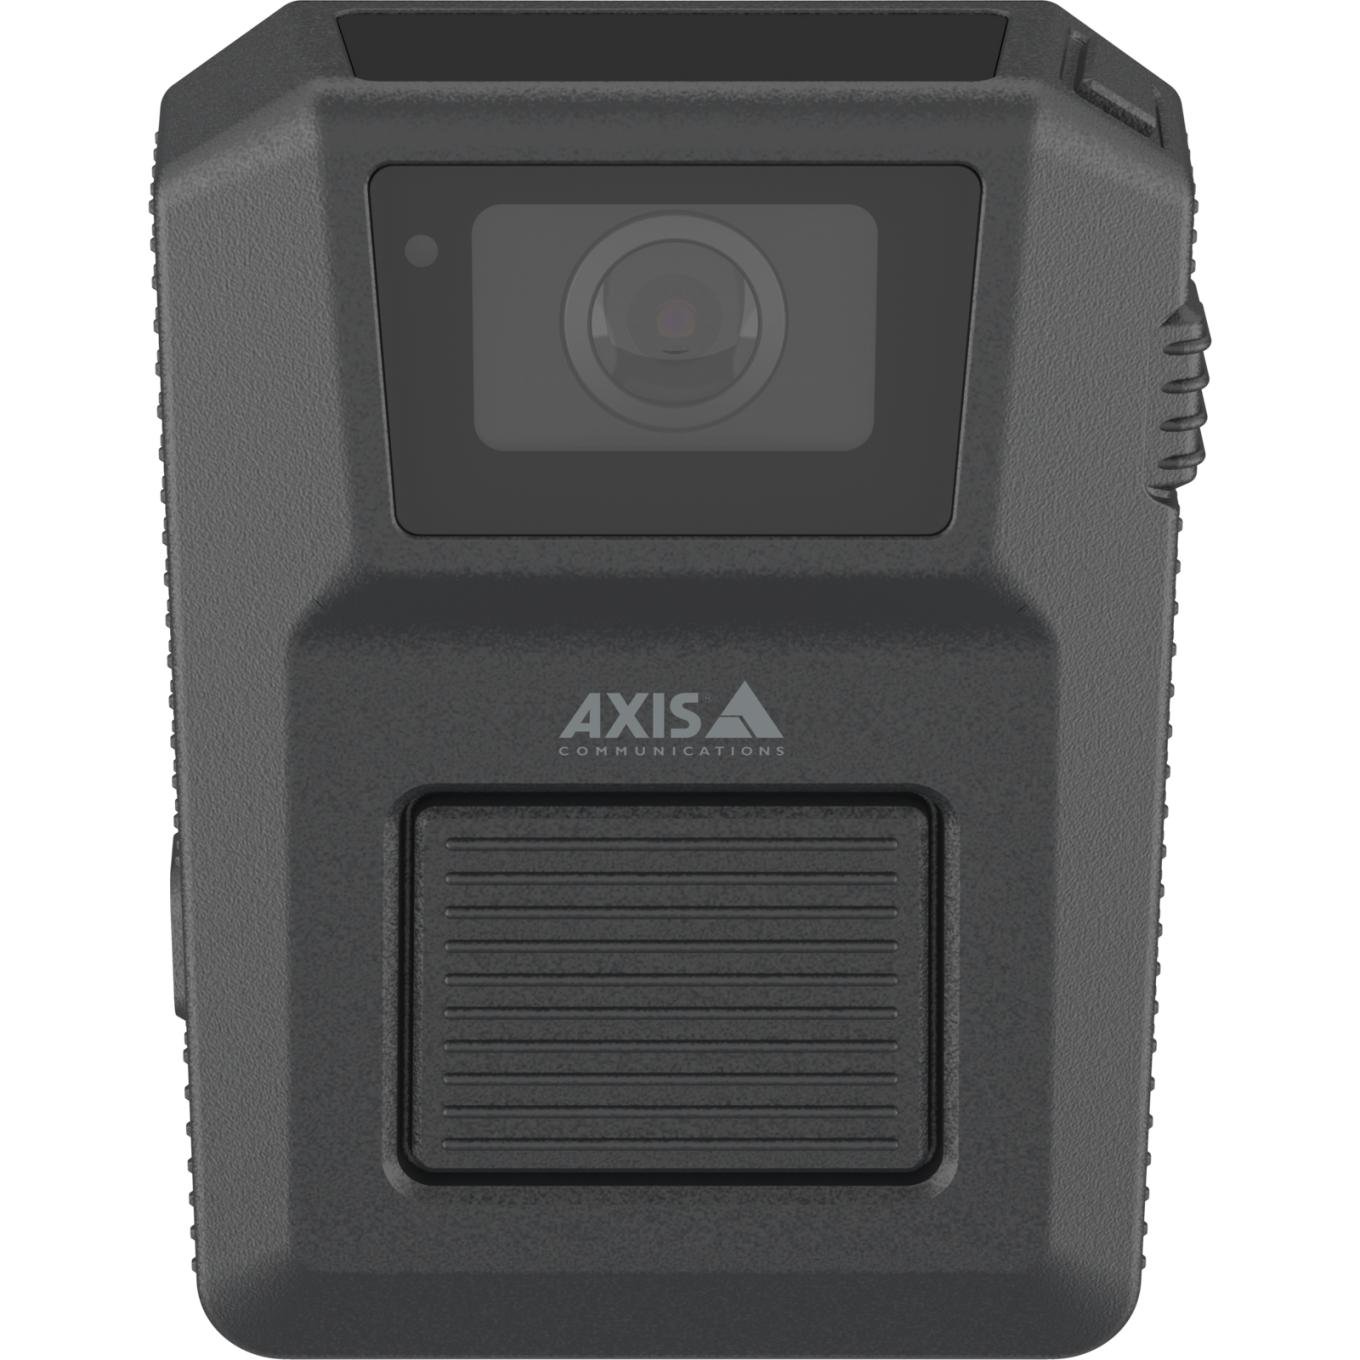 AXIS W102 Body Worn Camera schwarz Vorderseite